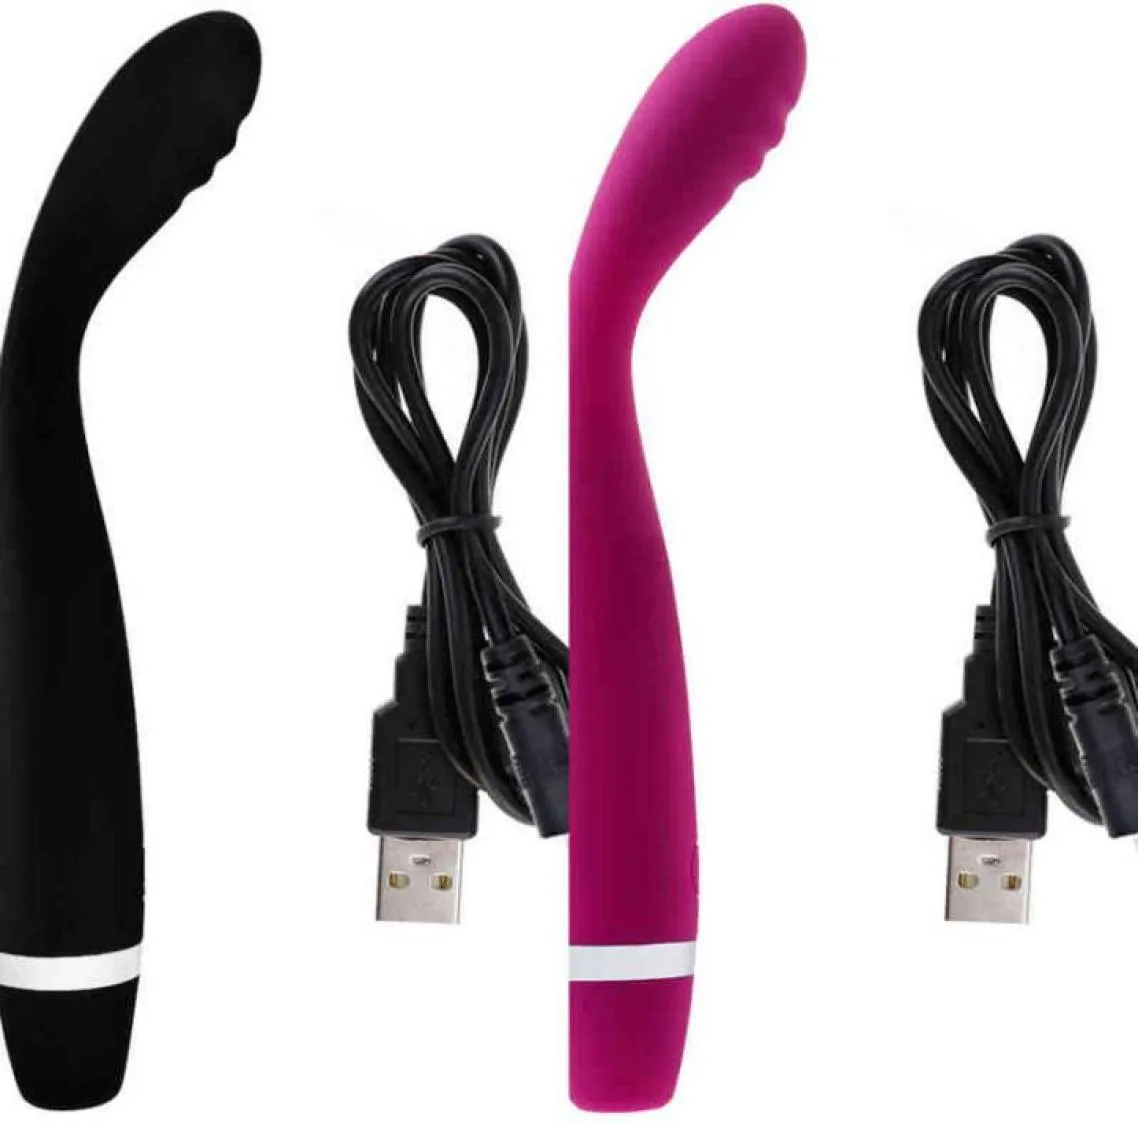 Nxy Sex Vibrators G Spot Finger Vibrator Toys для женщин USB Перезаряжаемая мягкая AV Magic Wand Женская мастурбация эротический продукт 4246350